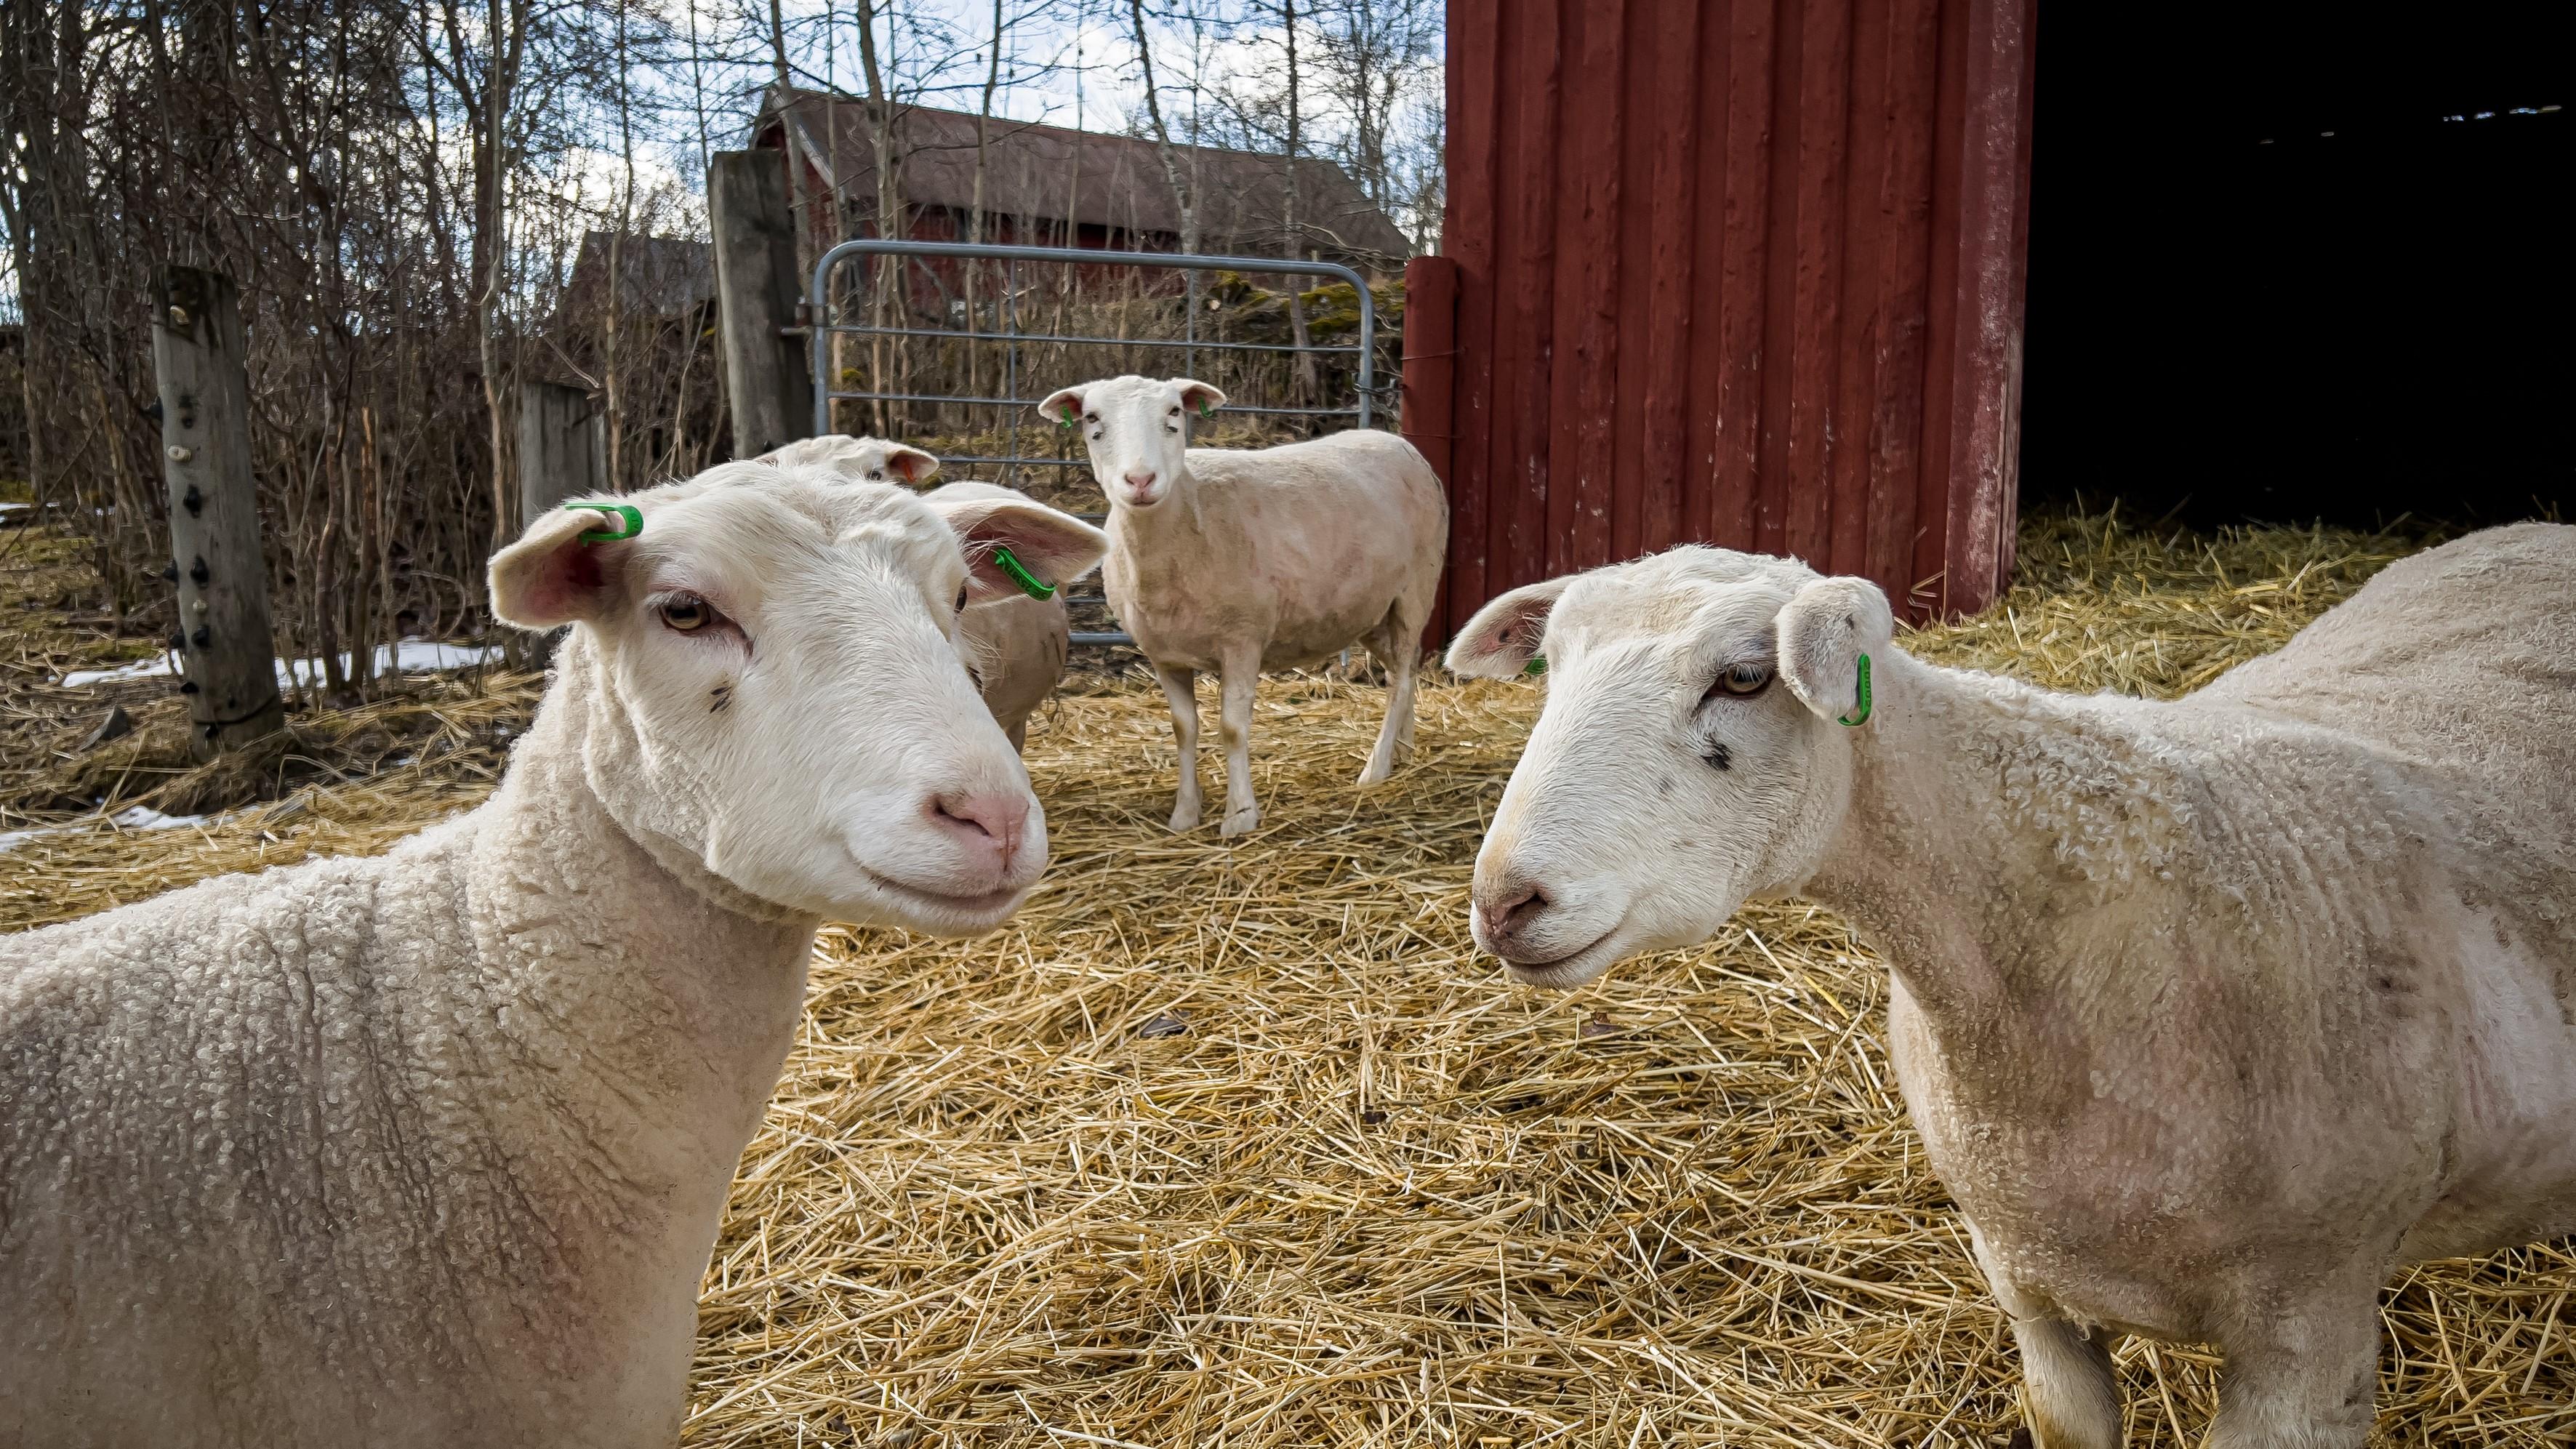 Svenska får klipps två gånger om året vilket ger en hel del ull. Det är ett naturmaterial med många användningsområden. Foto: Sofia Drevemo